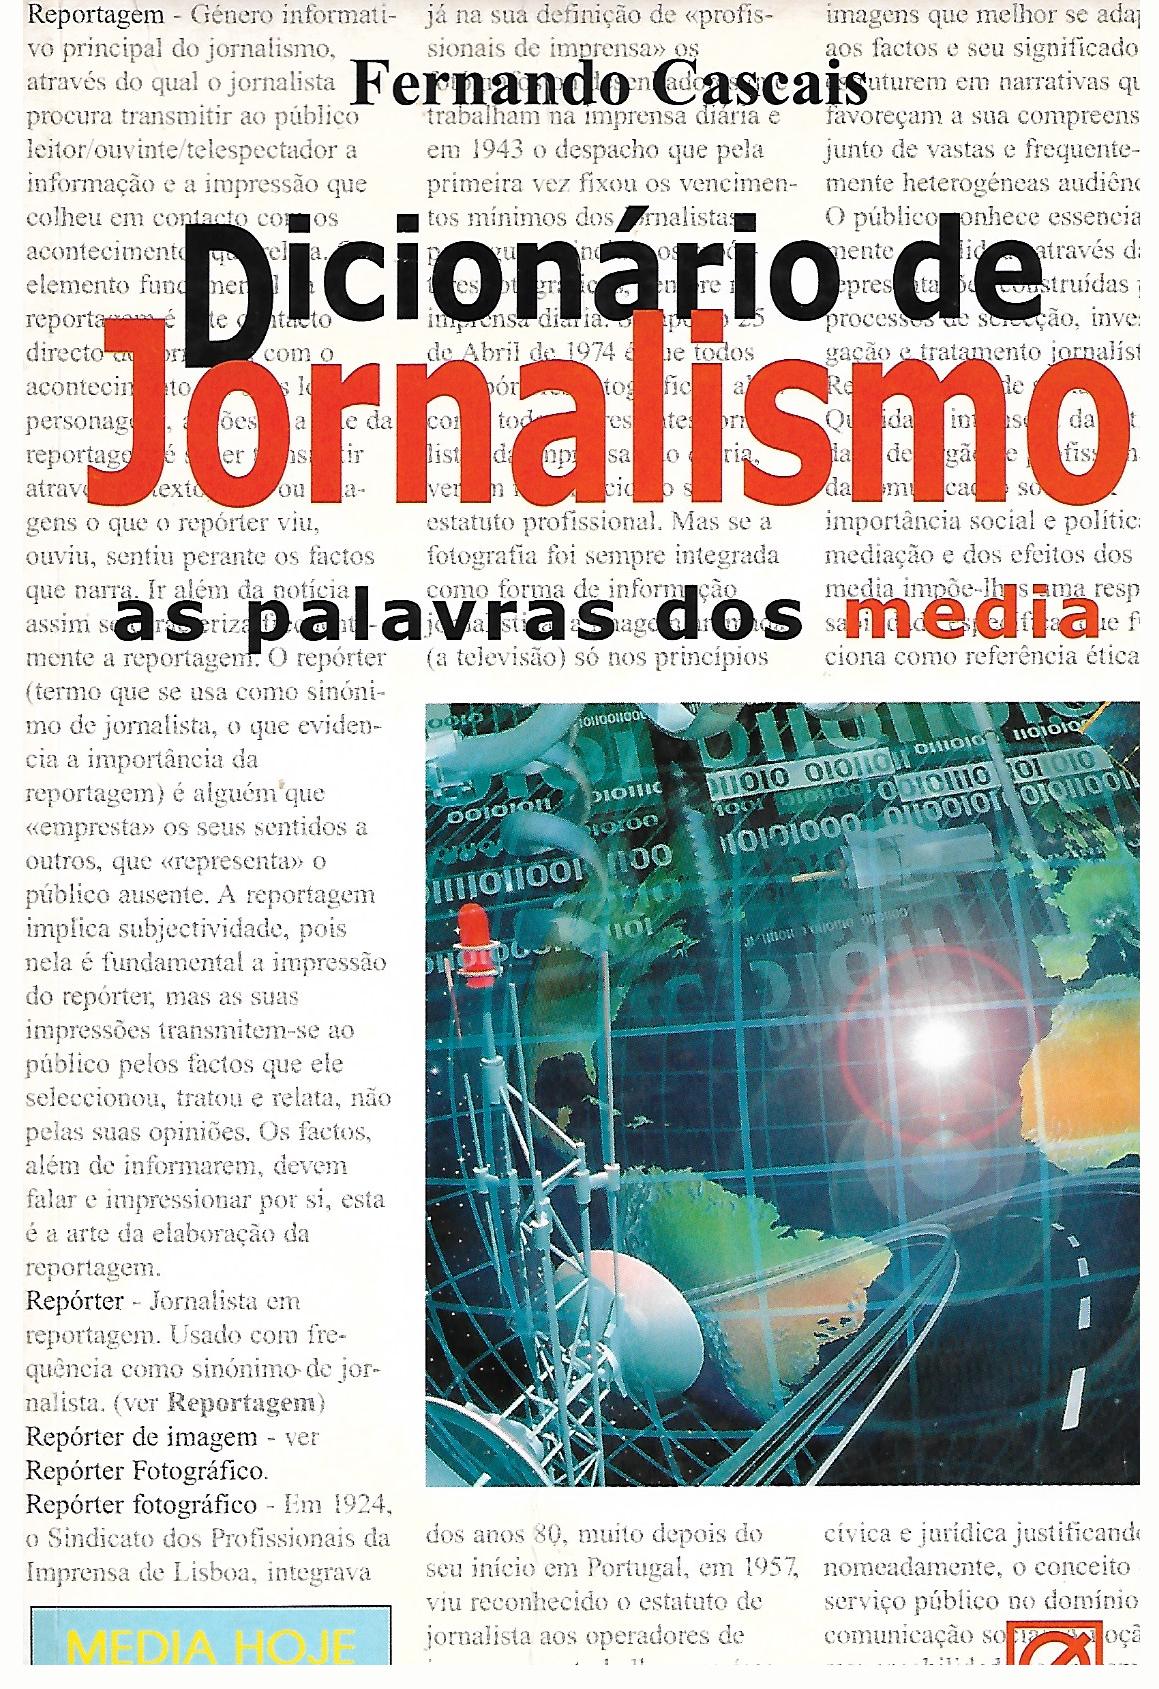 Dicionário de Jornalismo